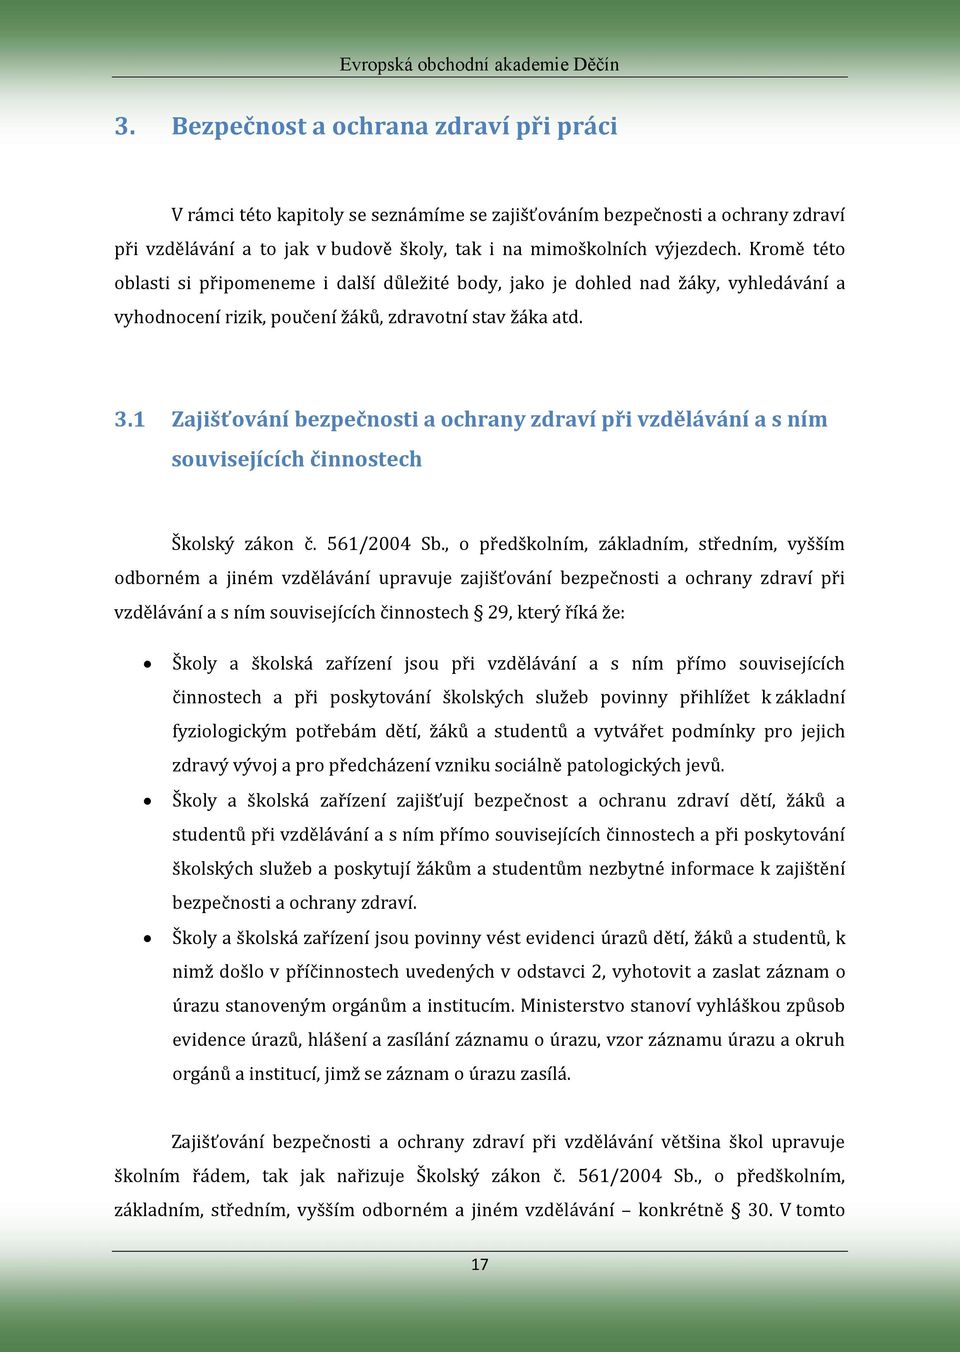 1 Zajišťování bezpečnosti a ochrany zdraví při vzdělávání a s ním souvisejících činnostech Školský zákon č. 561/2004 Sb.